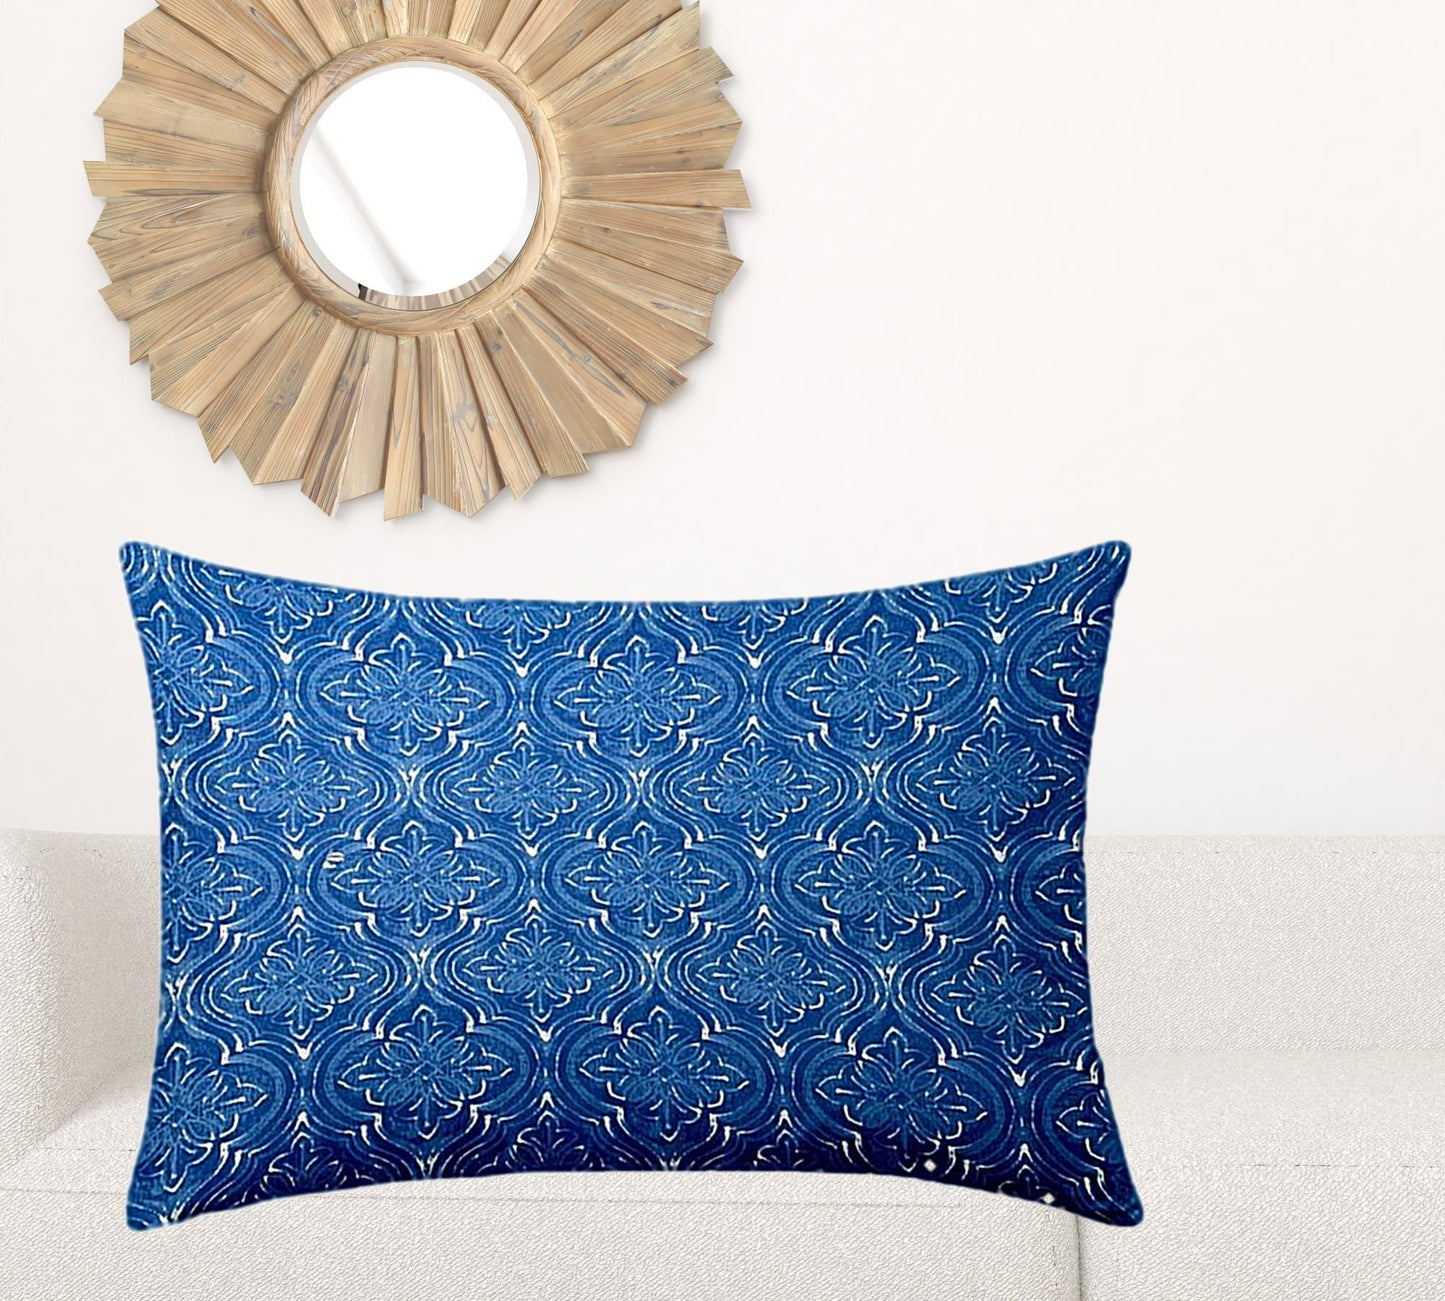 24" X 36" Blue And White Zippered Ikat Lumbar Indoor Outdoor Pillow